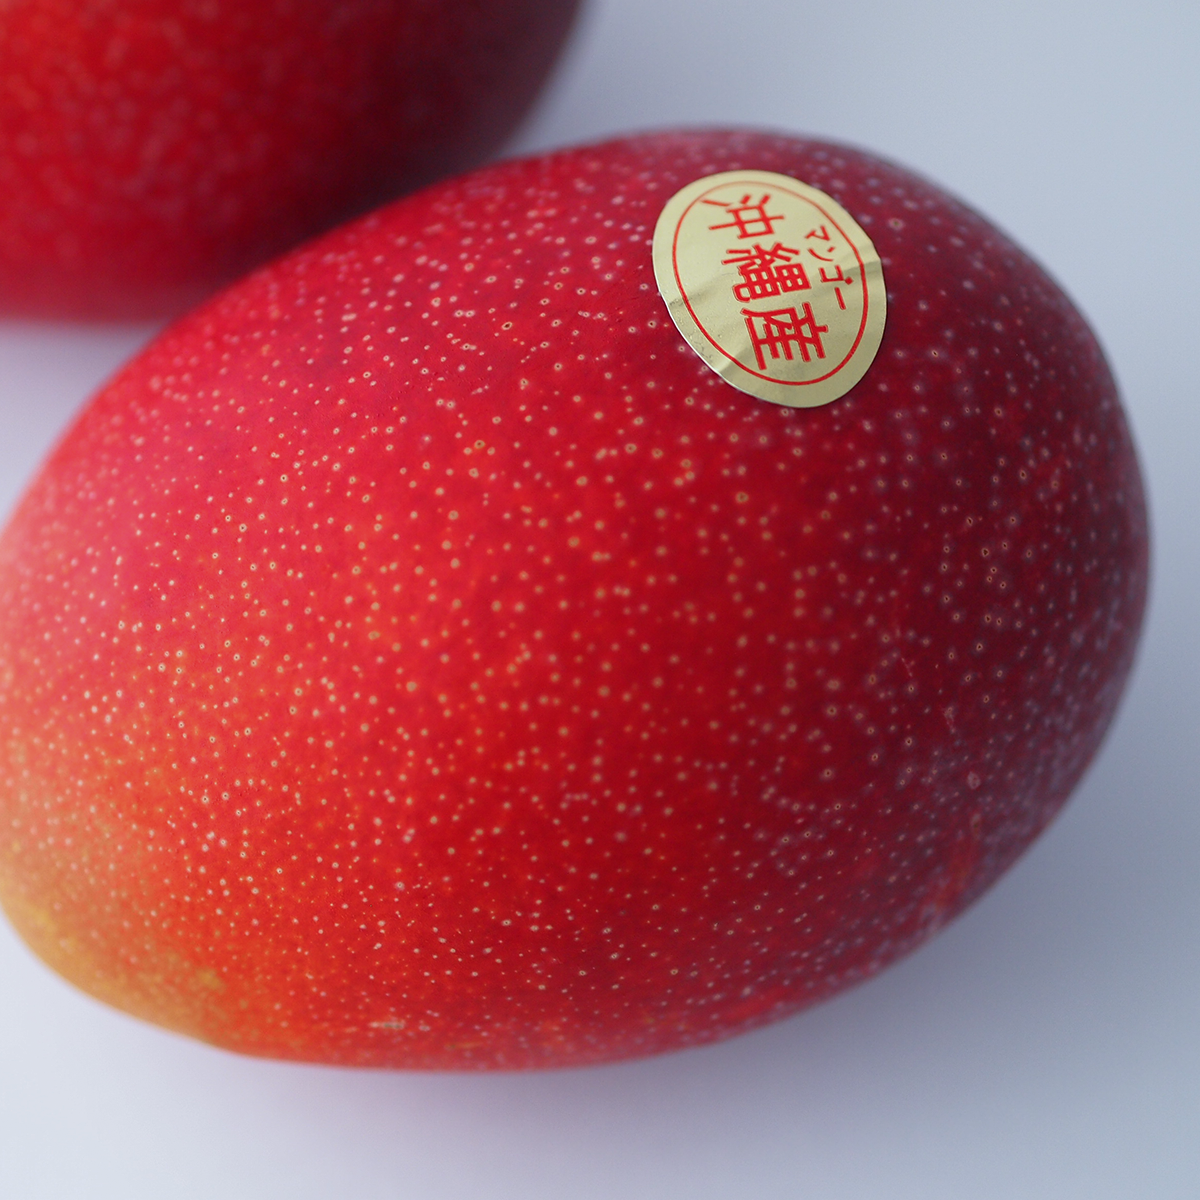 『予約商品』 南の果実園のアップルマンゴー 【極-きわみ-】